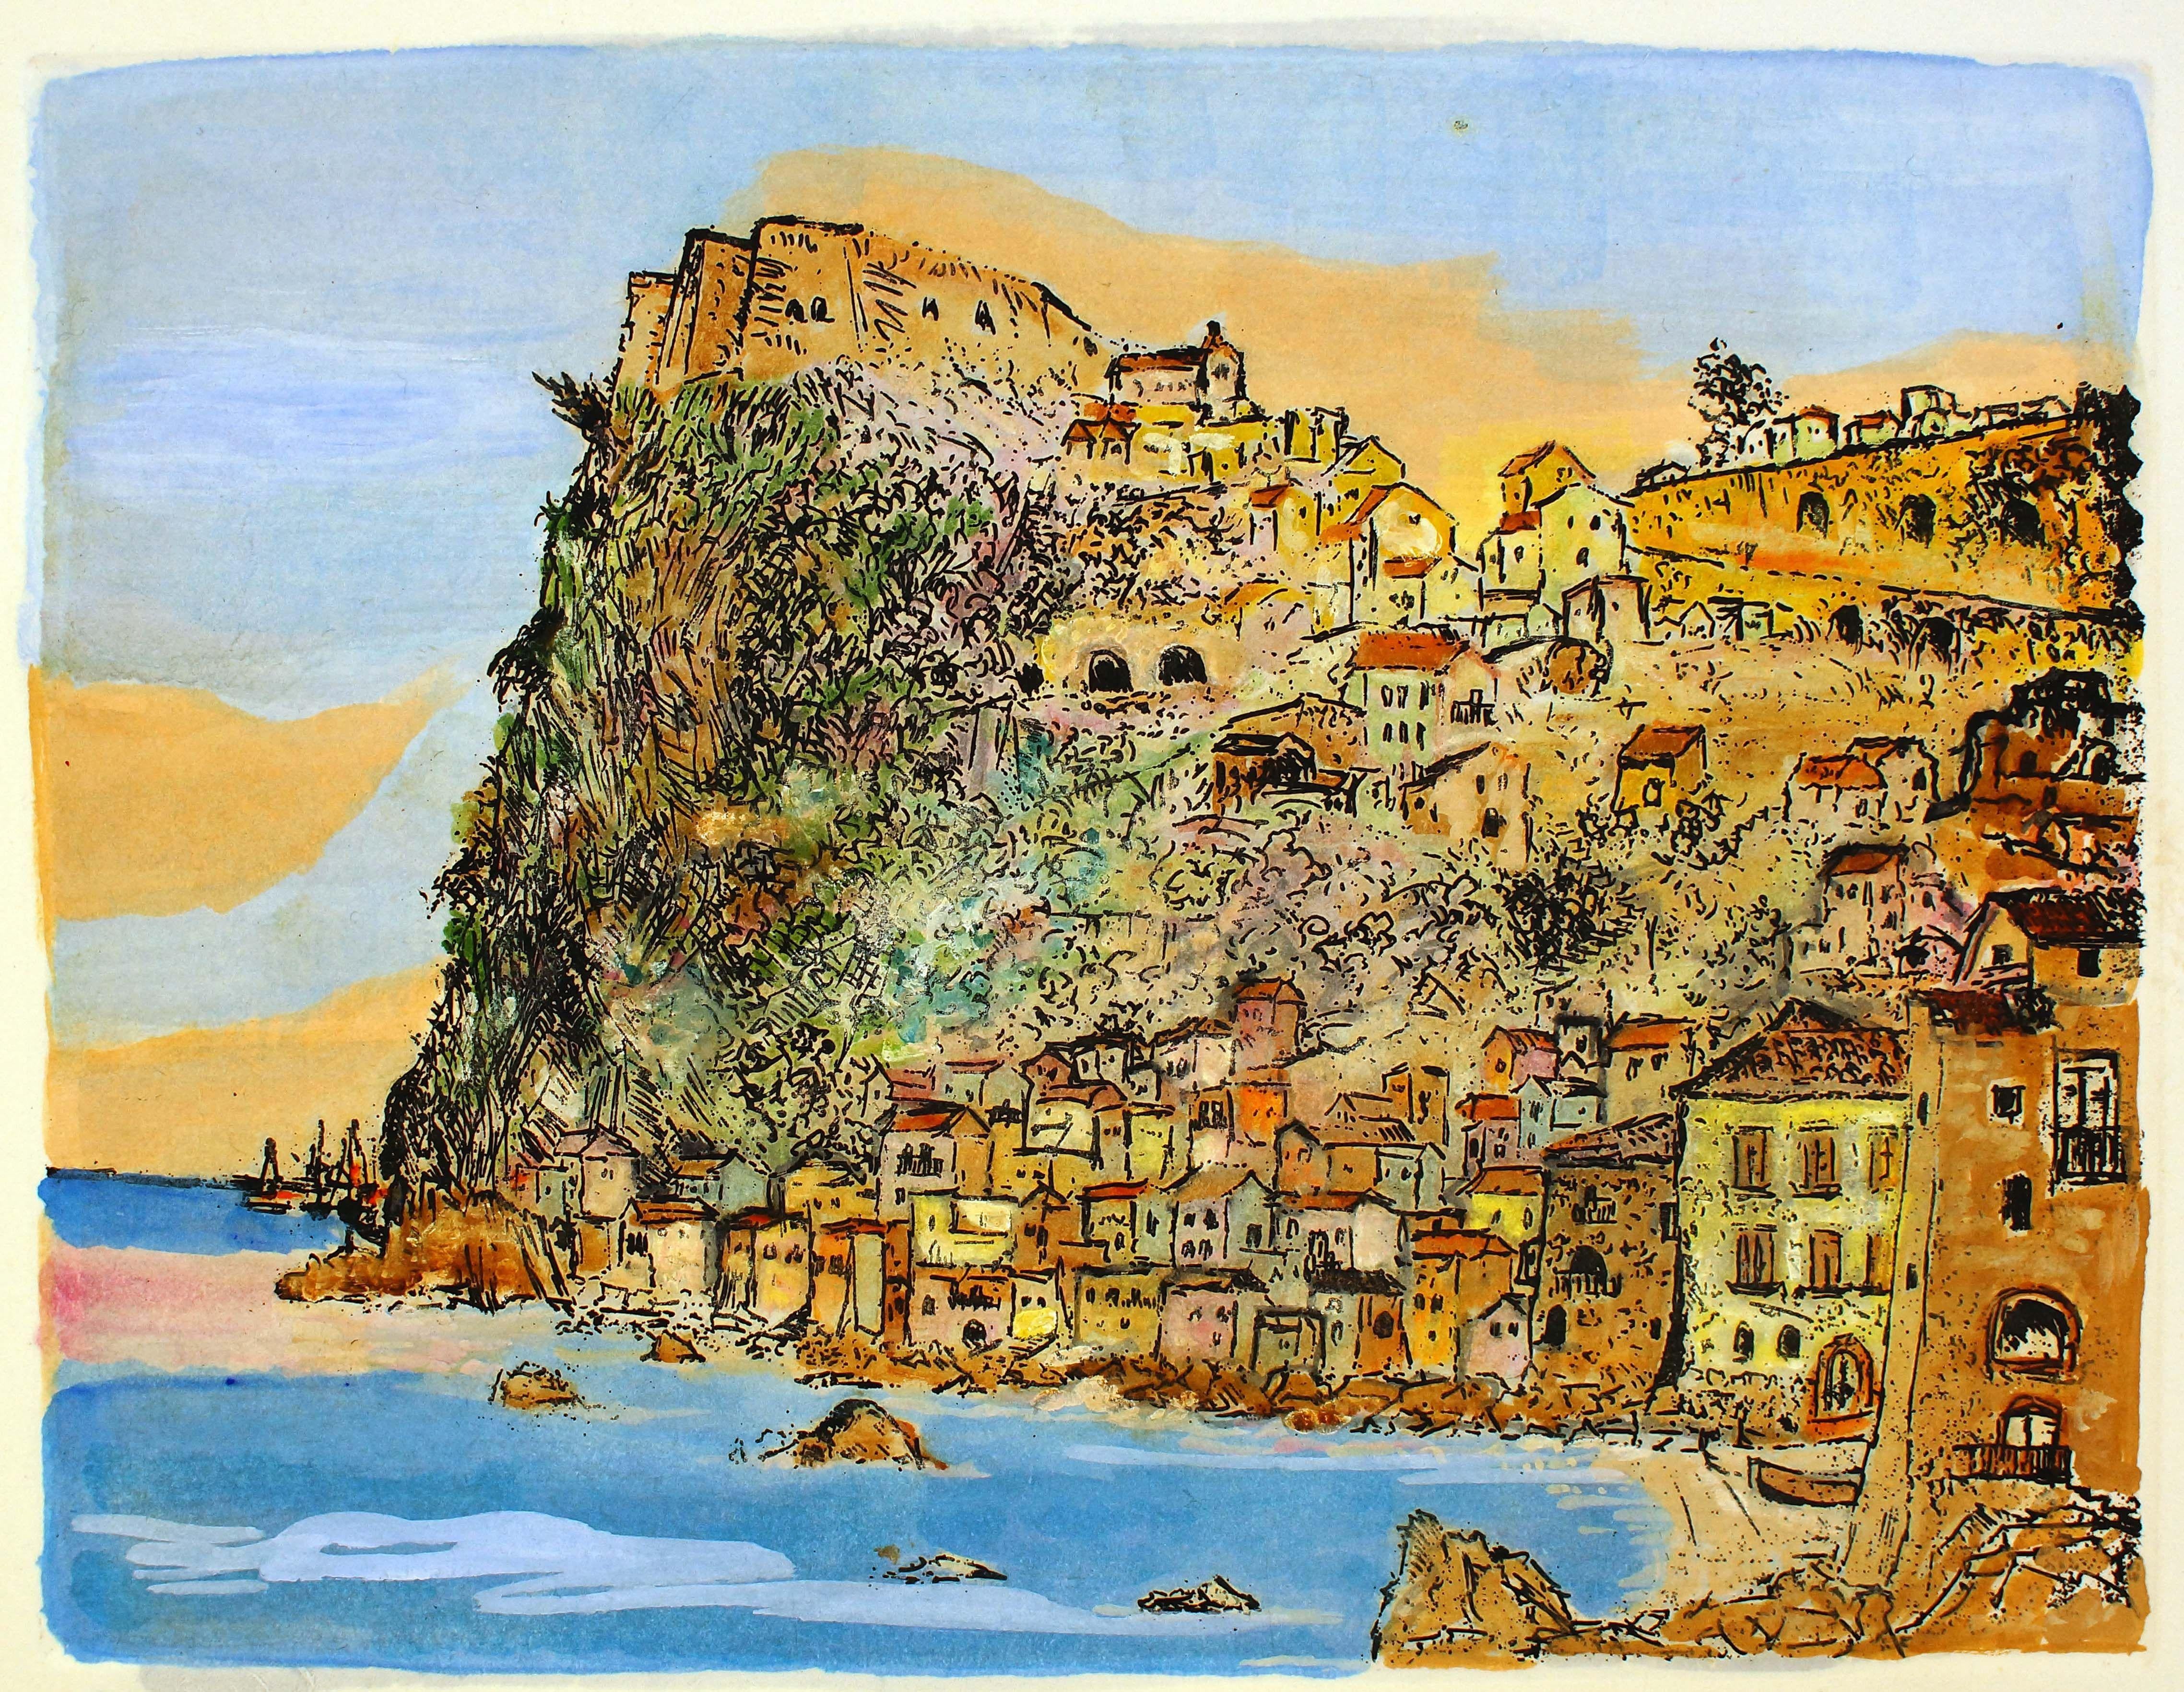 Giovanni Omiccioli Figurative Print - Scilla, Landscape - Country and Coast - Etching and Watercolor by G. Omiccioli